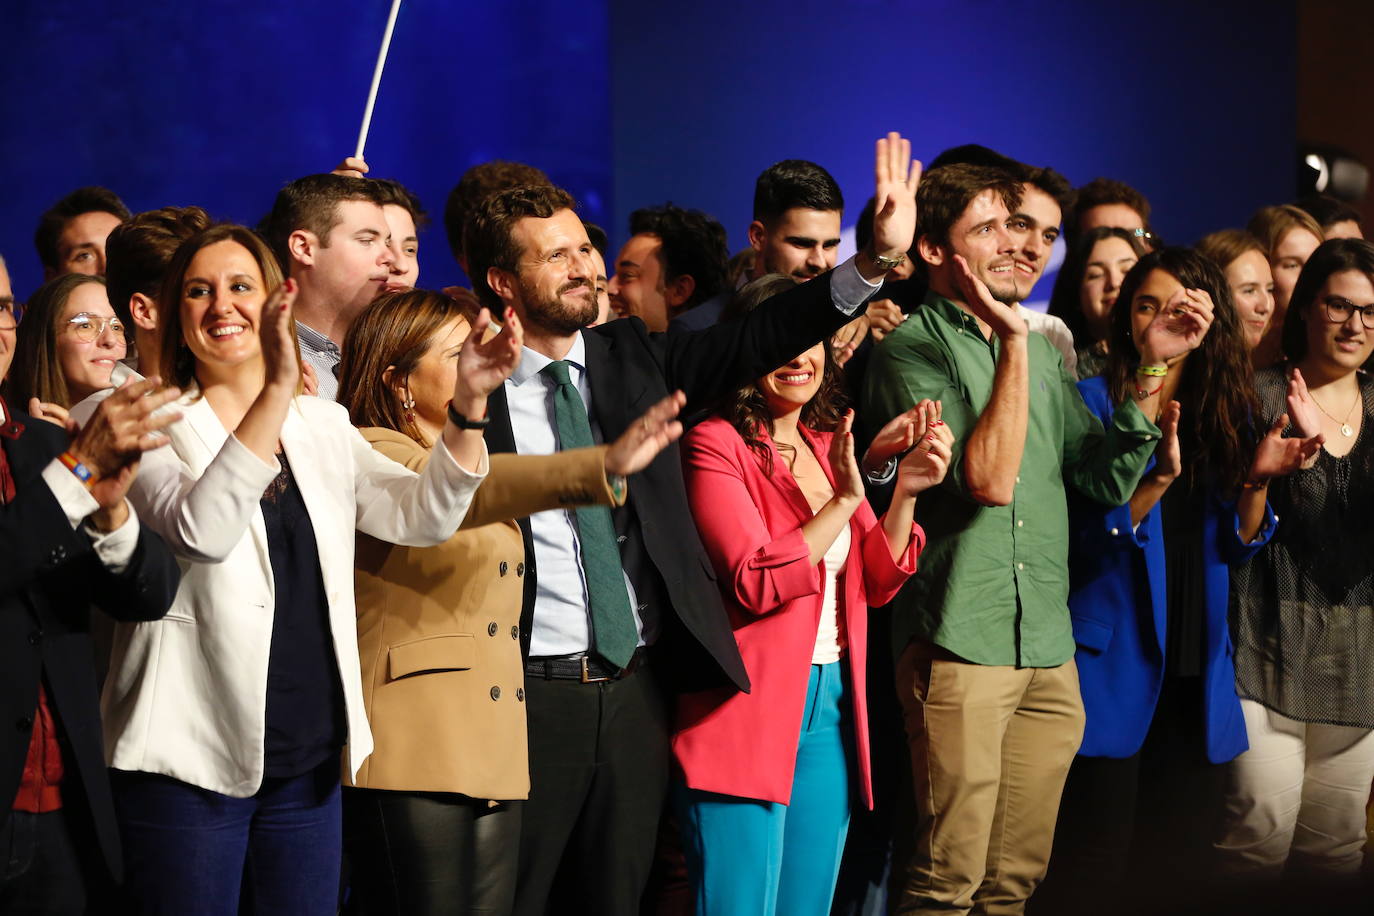 El líder del Partido Popular protagoniza un acto en el Auditorio Mar Rojo del Oceanogràfic de Valencia por las Elecciones Generales del 10N.